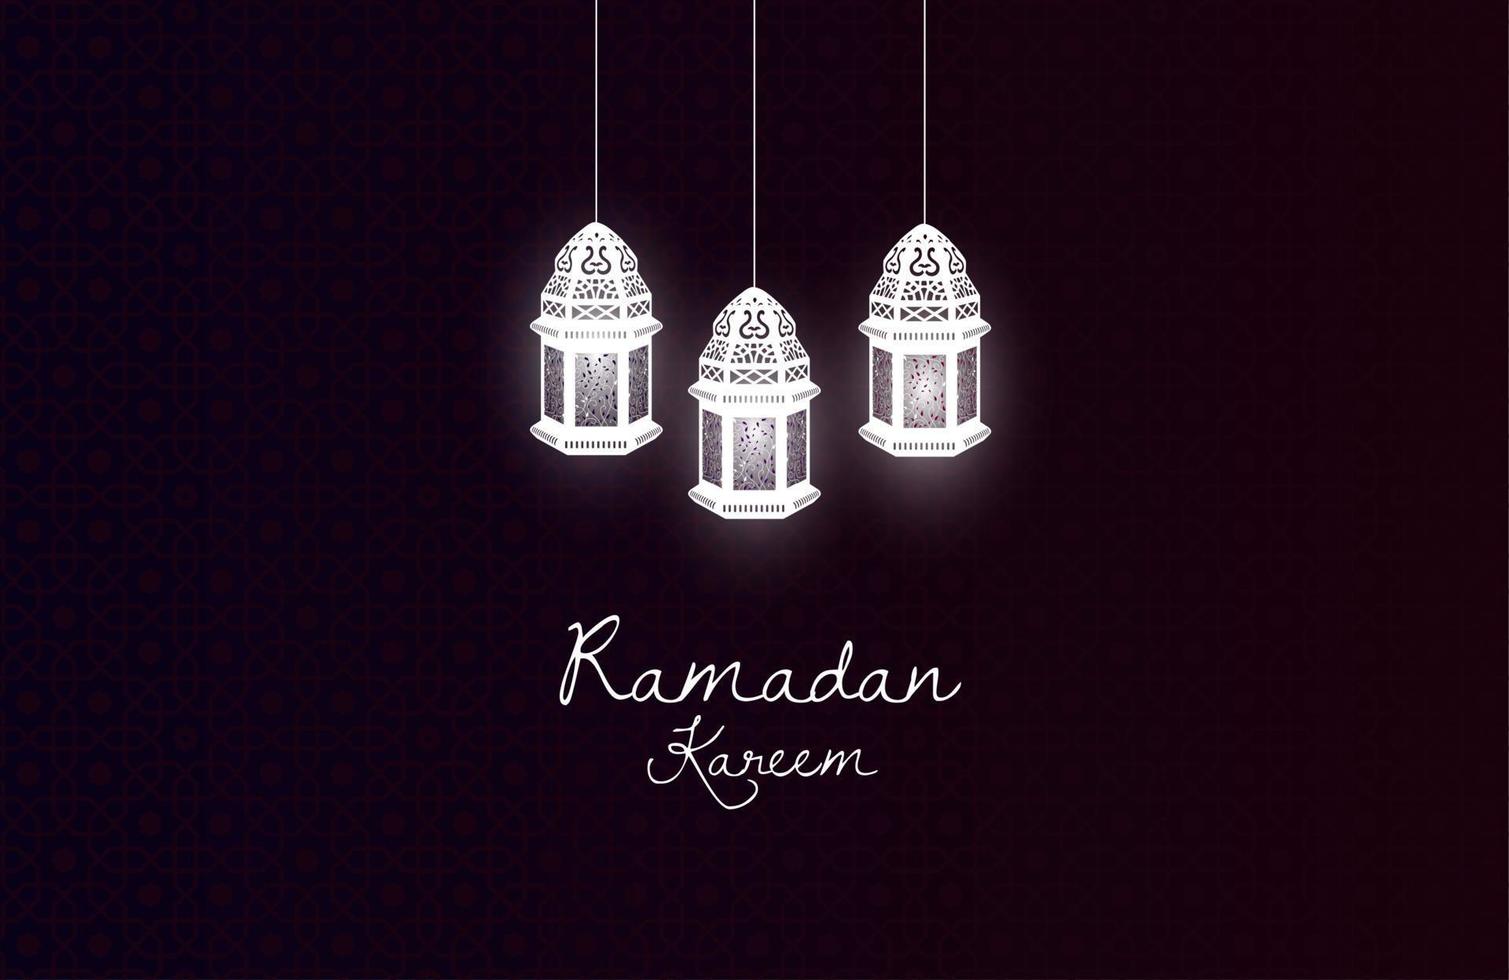 ramadan kareem gratulationskort design med lyktor lampa på mörk svart bakgrund vektor